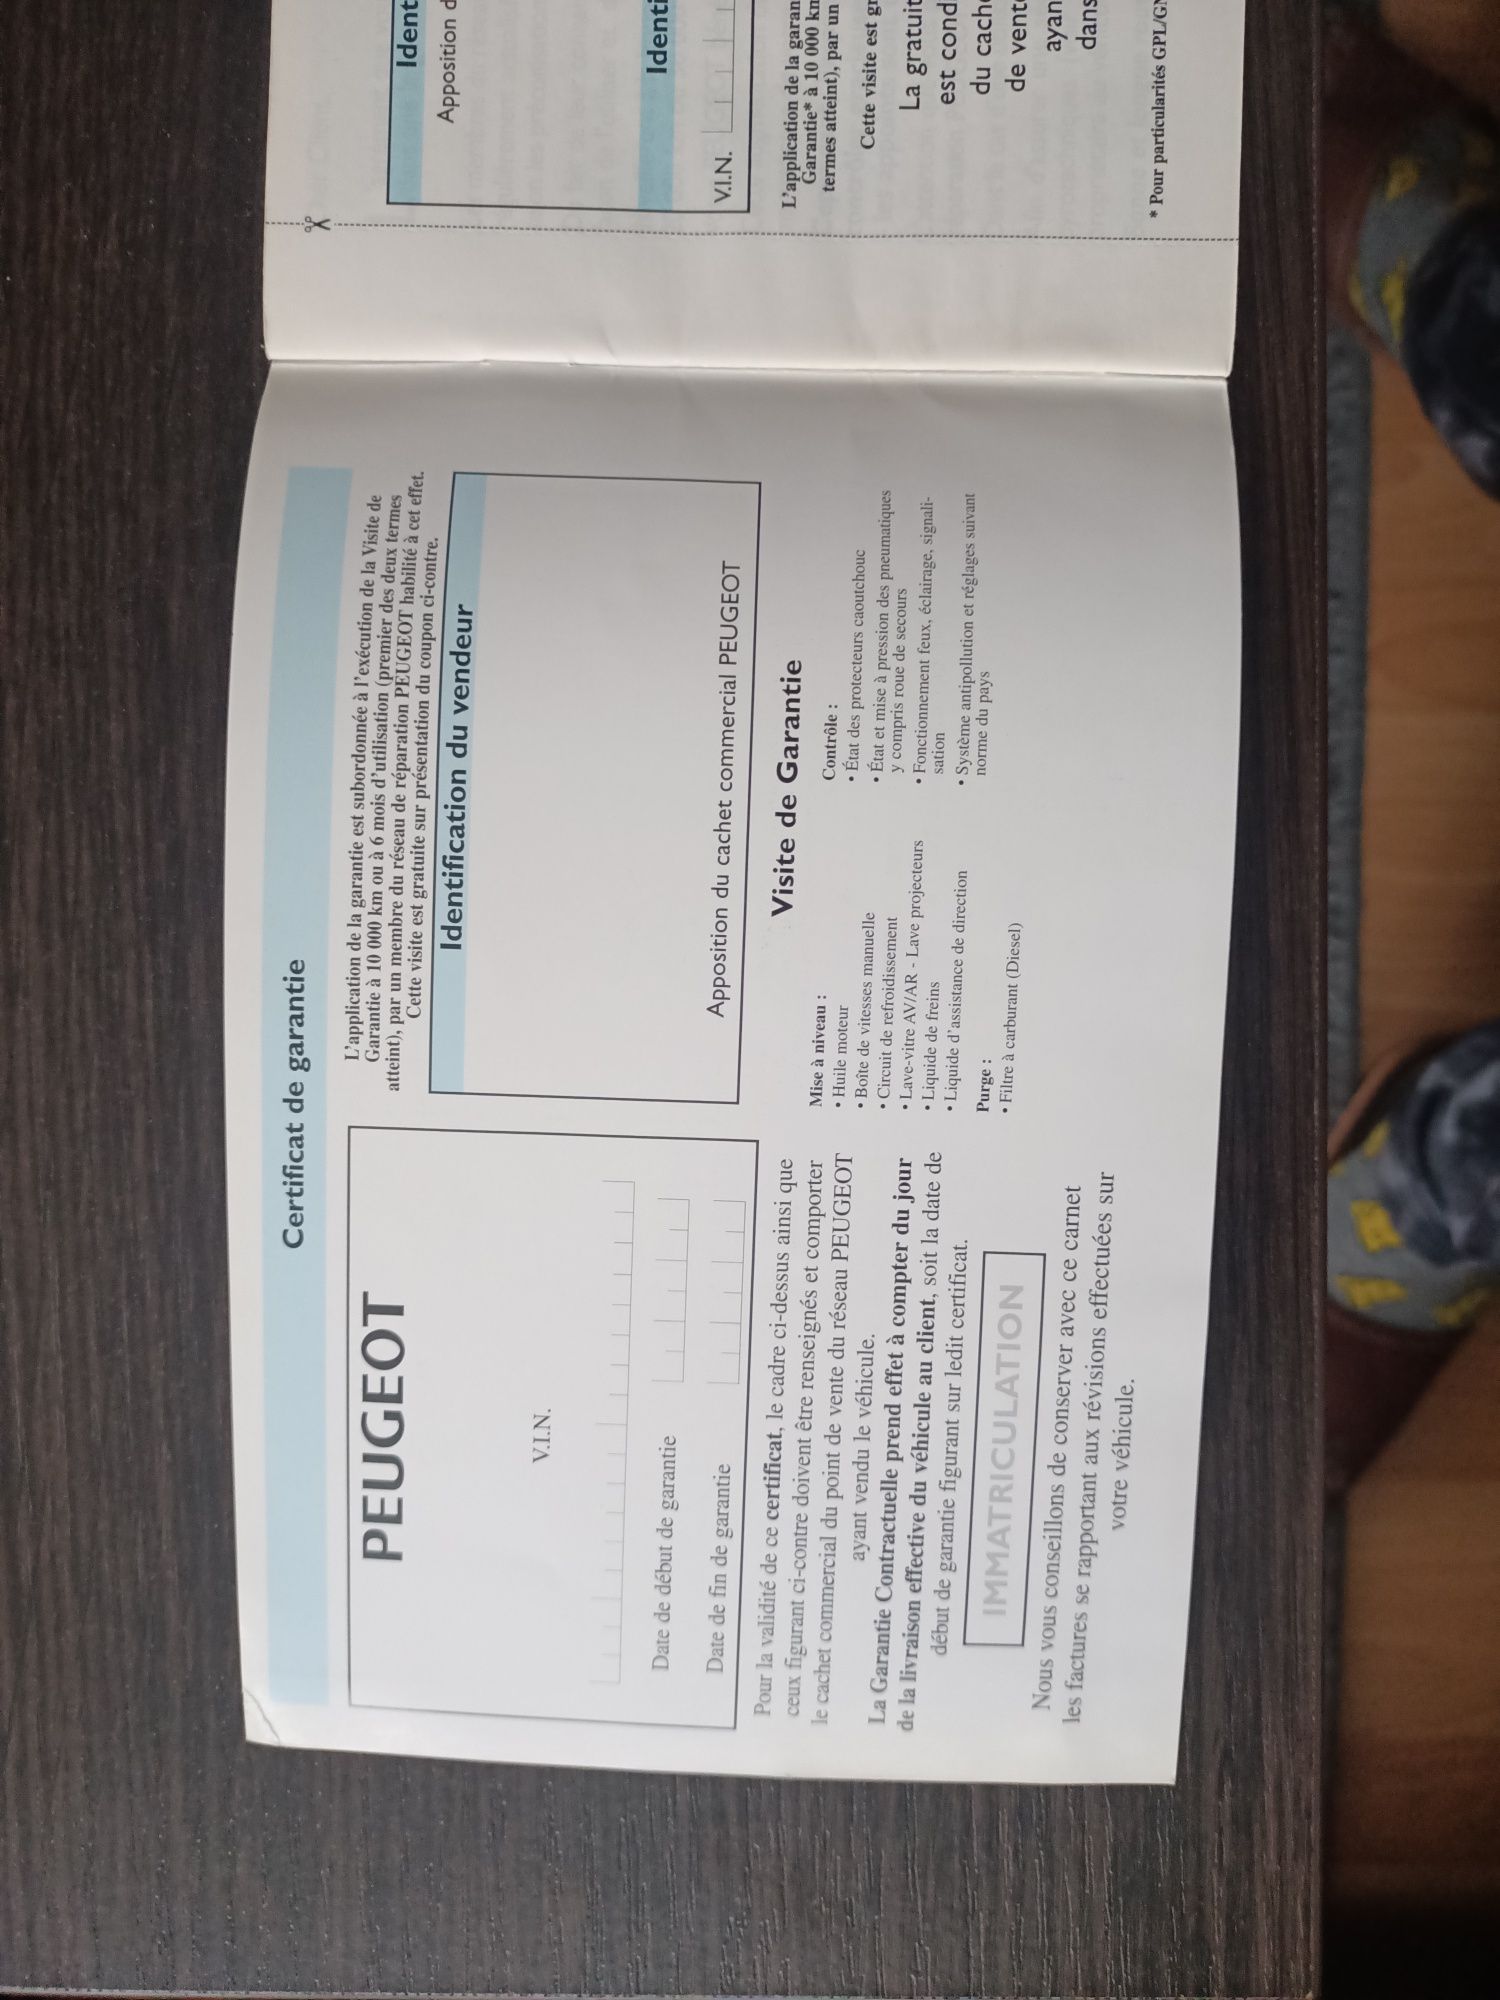 Książka gwarancyjna Peugeot czysta + instrukcja 407